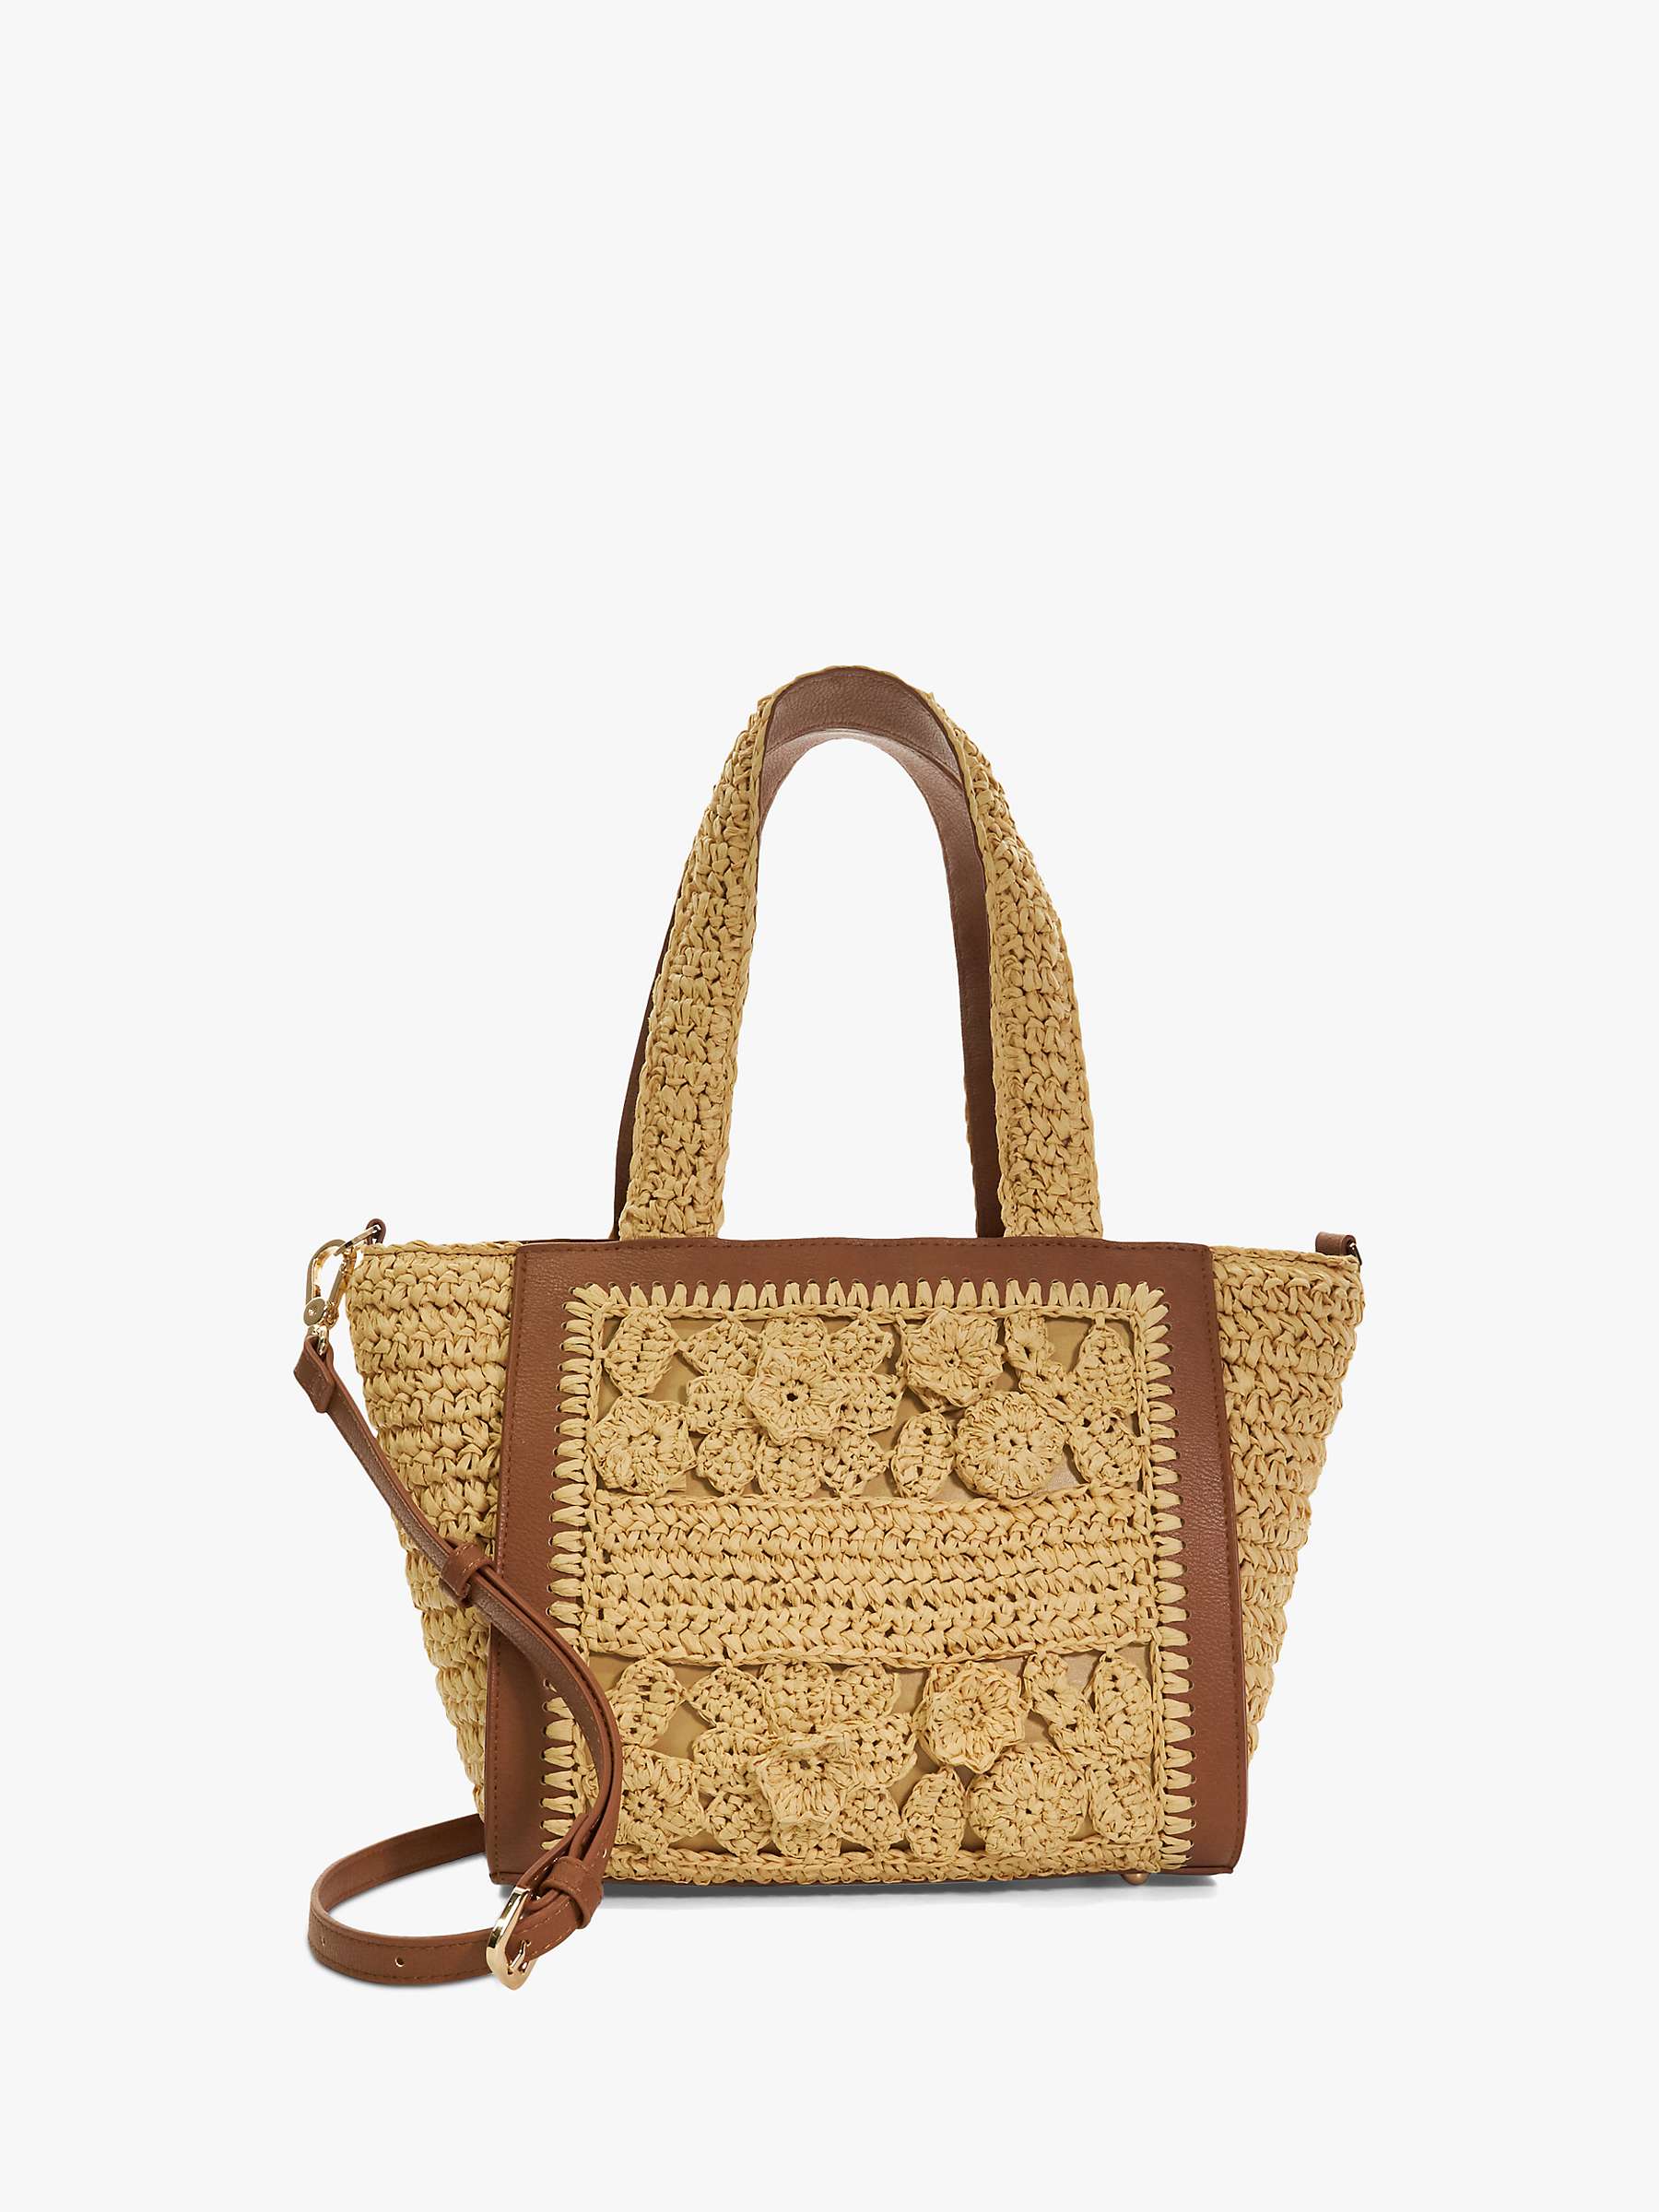 Buy Dune Daisy Floral Applique Embellished Handbag Online at johnlewis.com